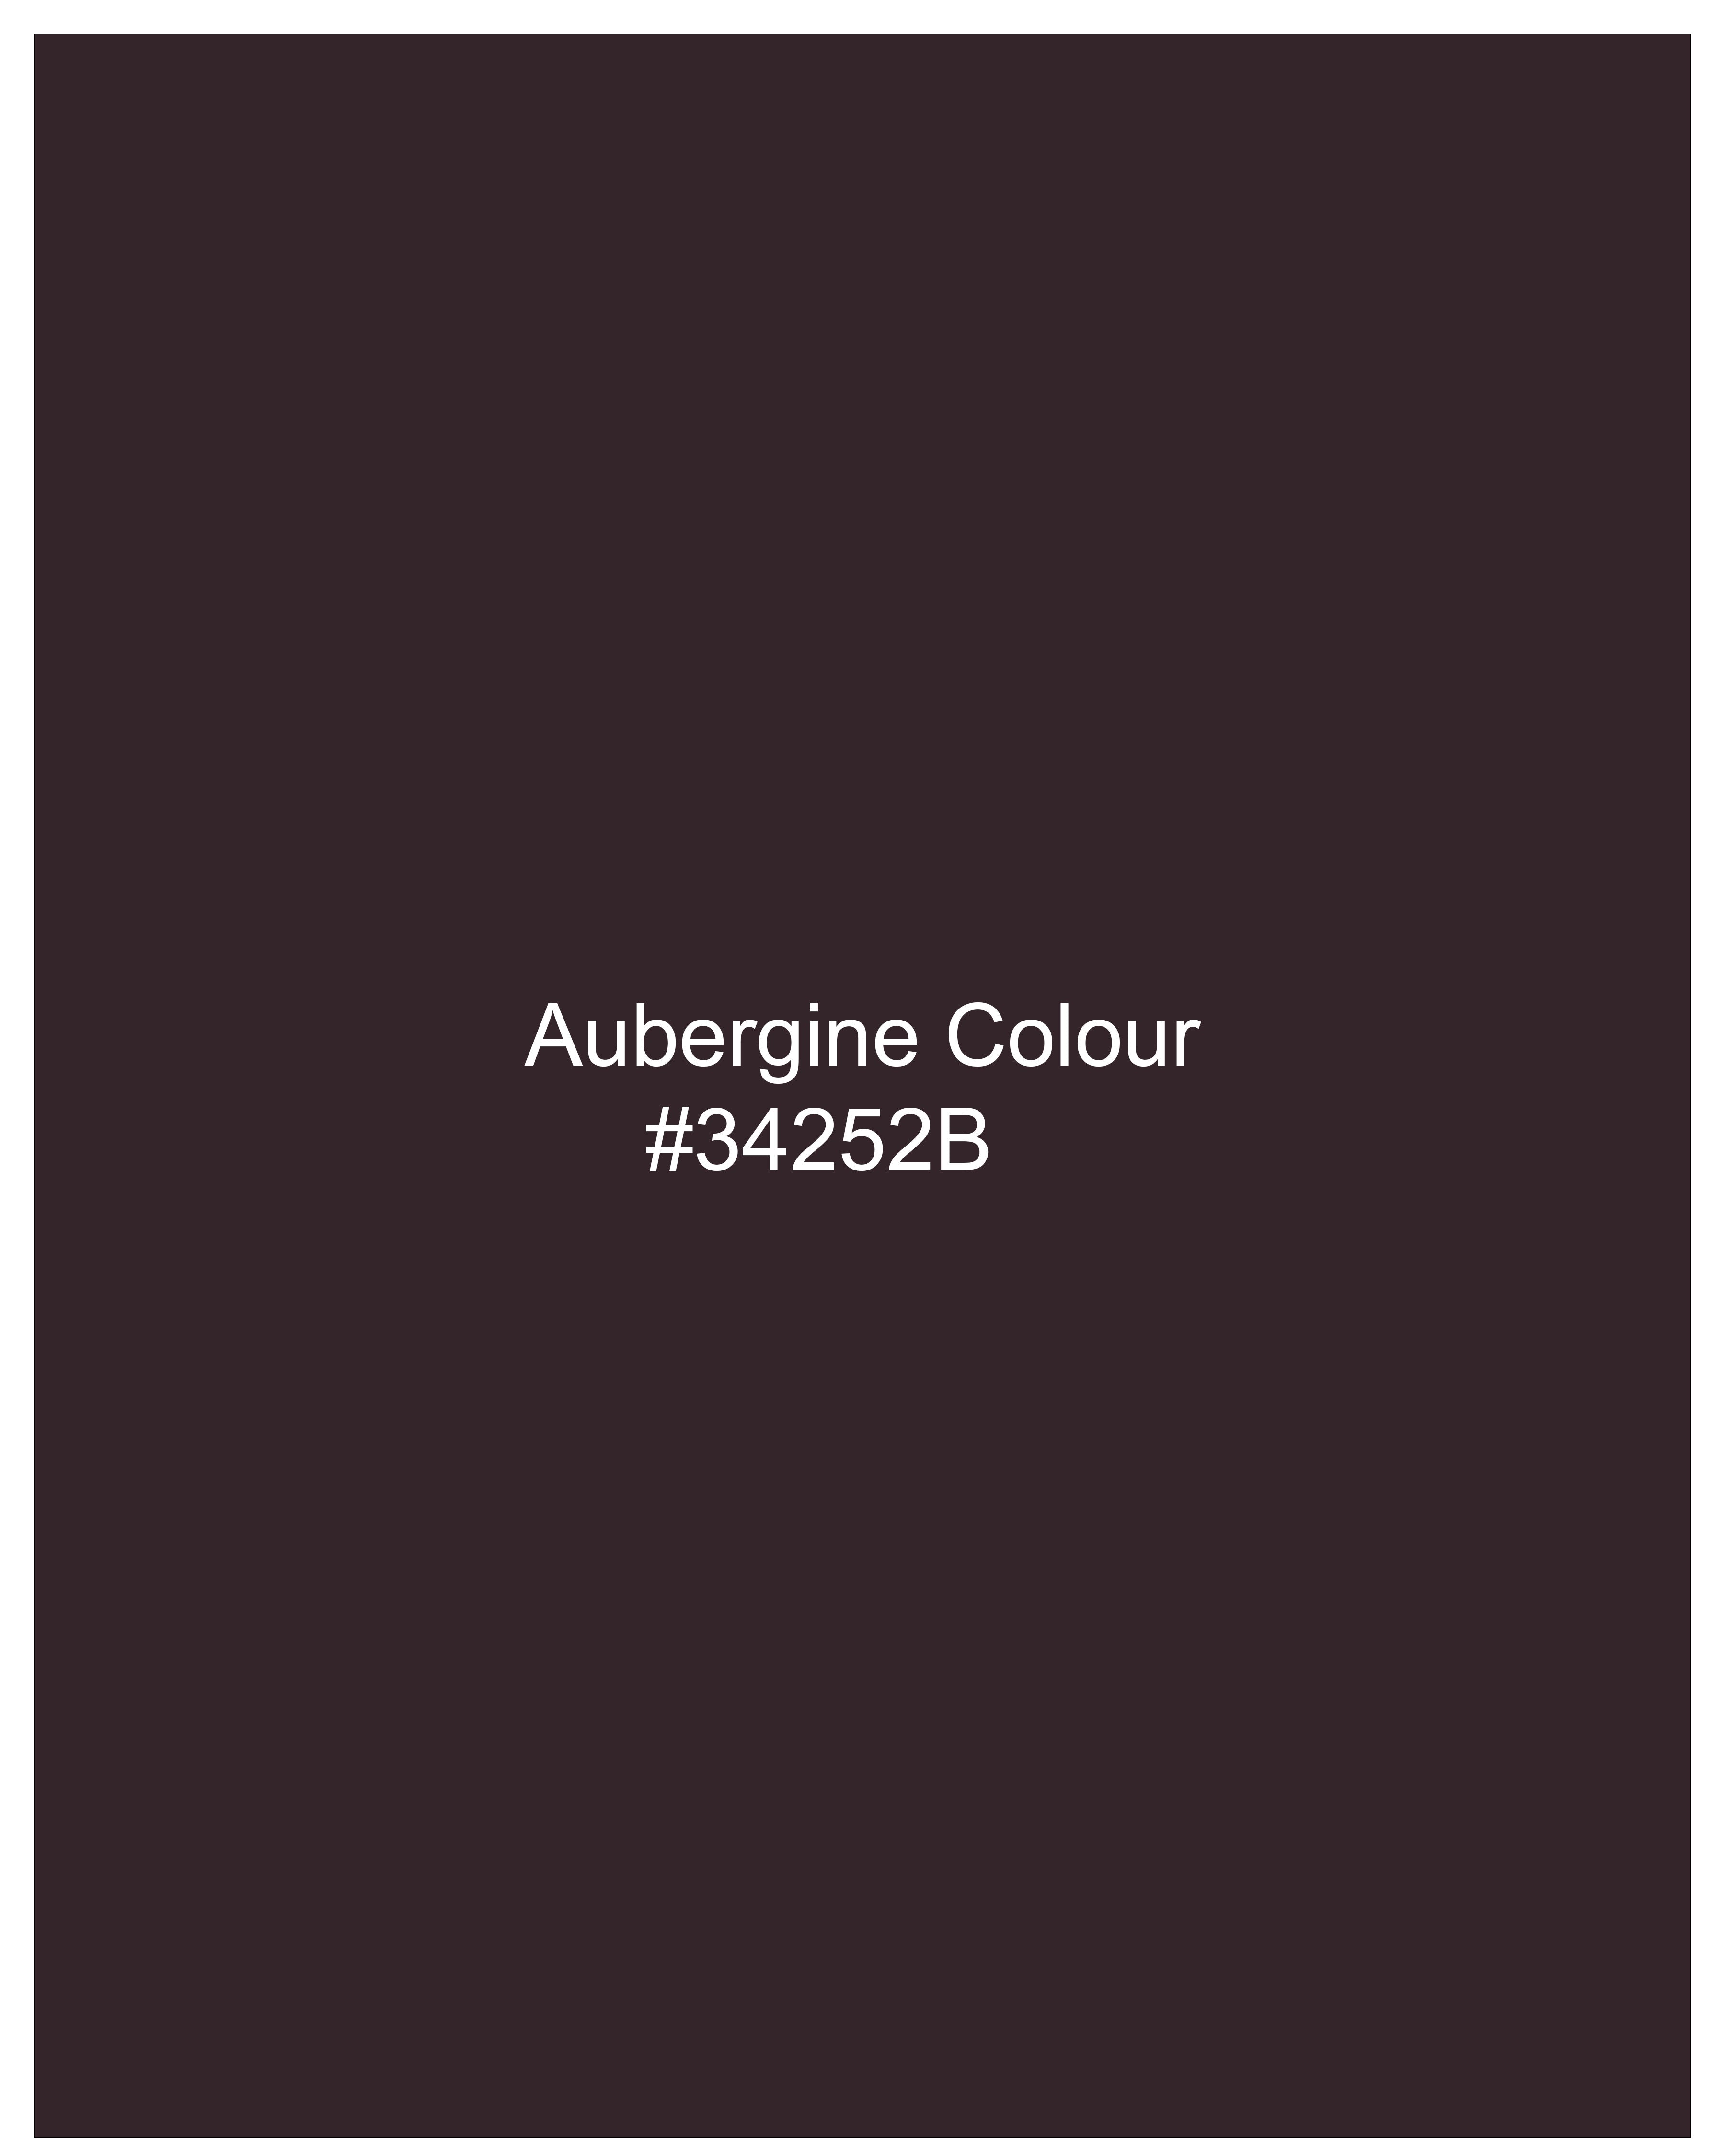 Aubergine Maroon Textured Pant T2288-28, T2288-30, T2288-32, T2288-34, T2288-36, T2288-38, T2288-40, T2288-42, T2288-44